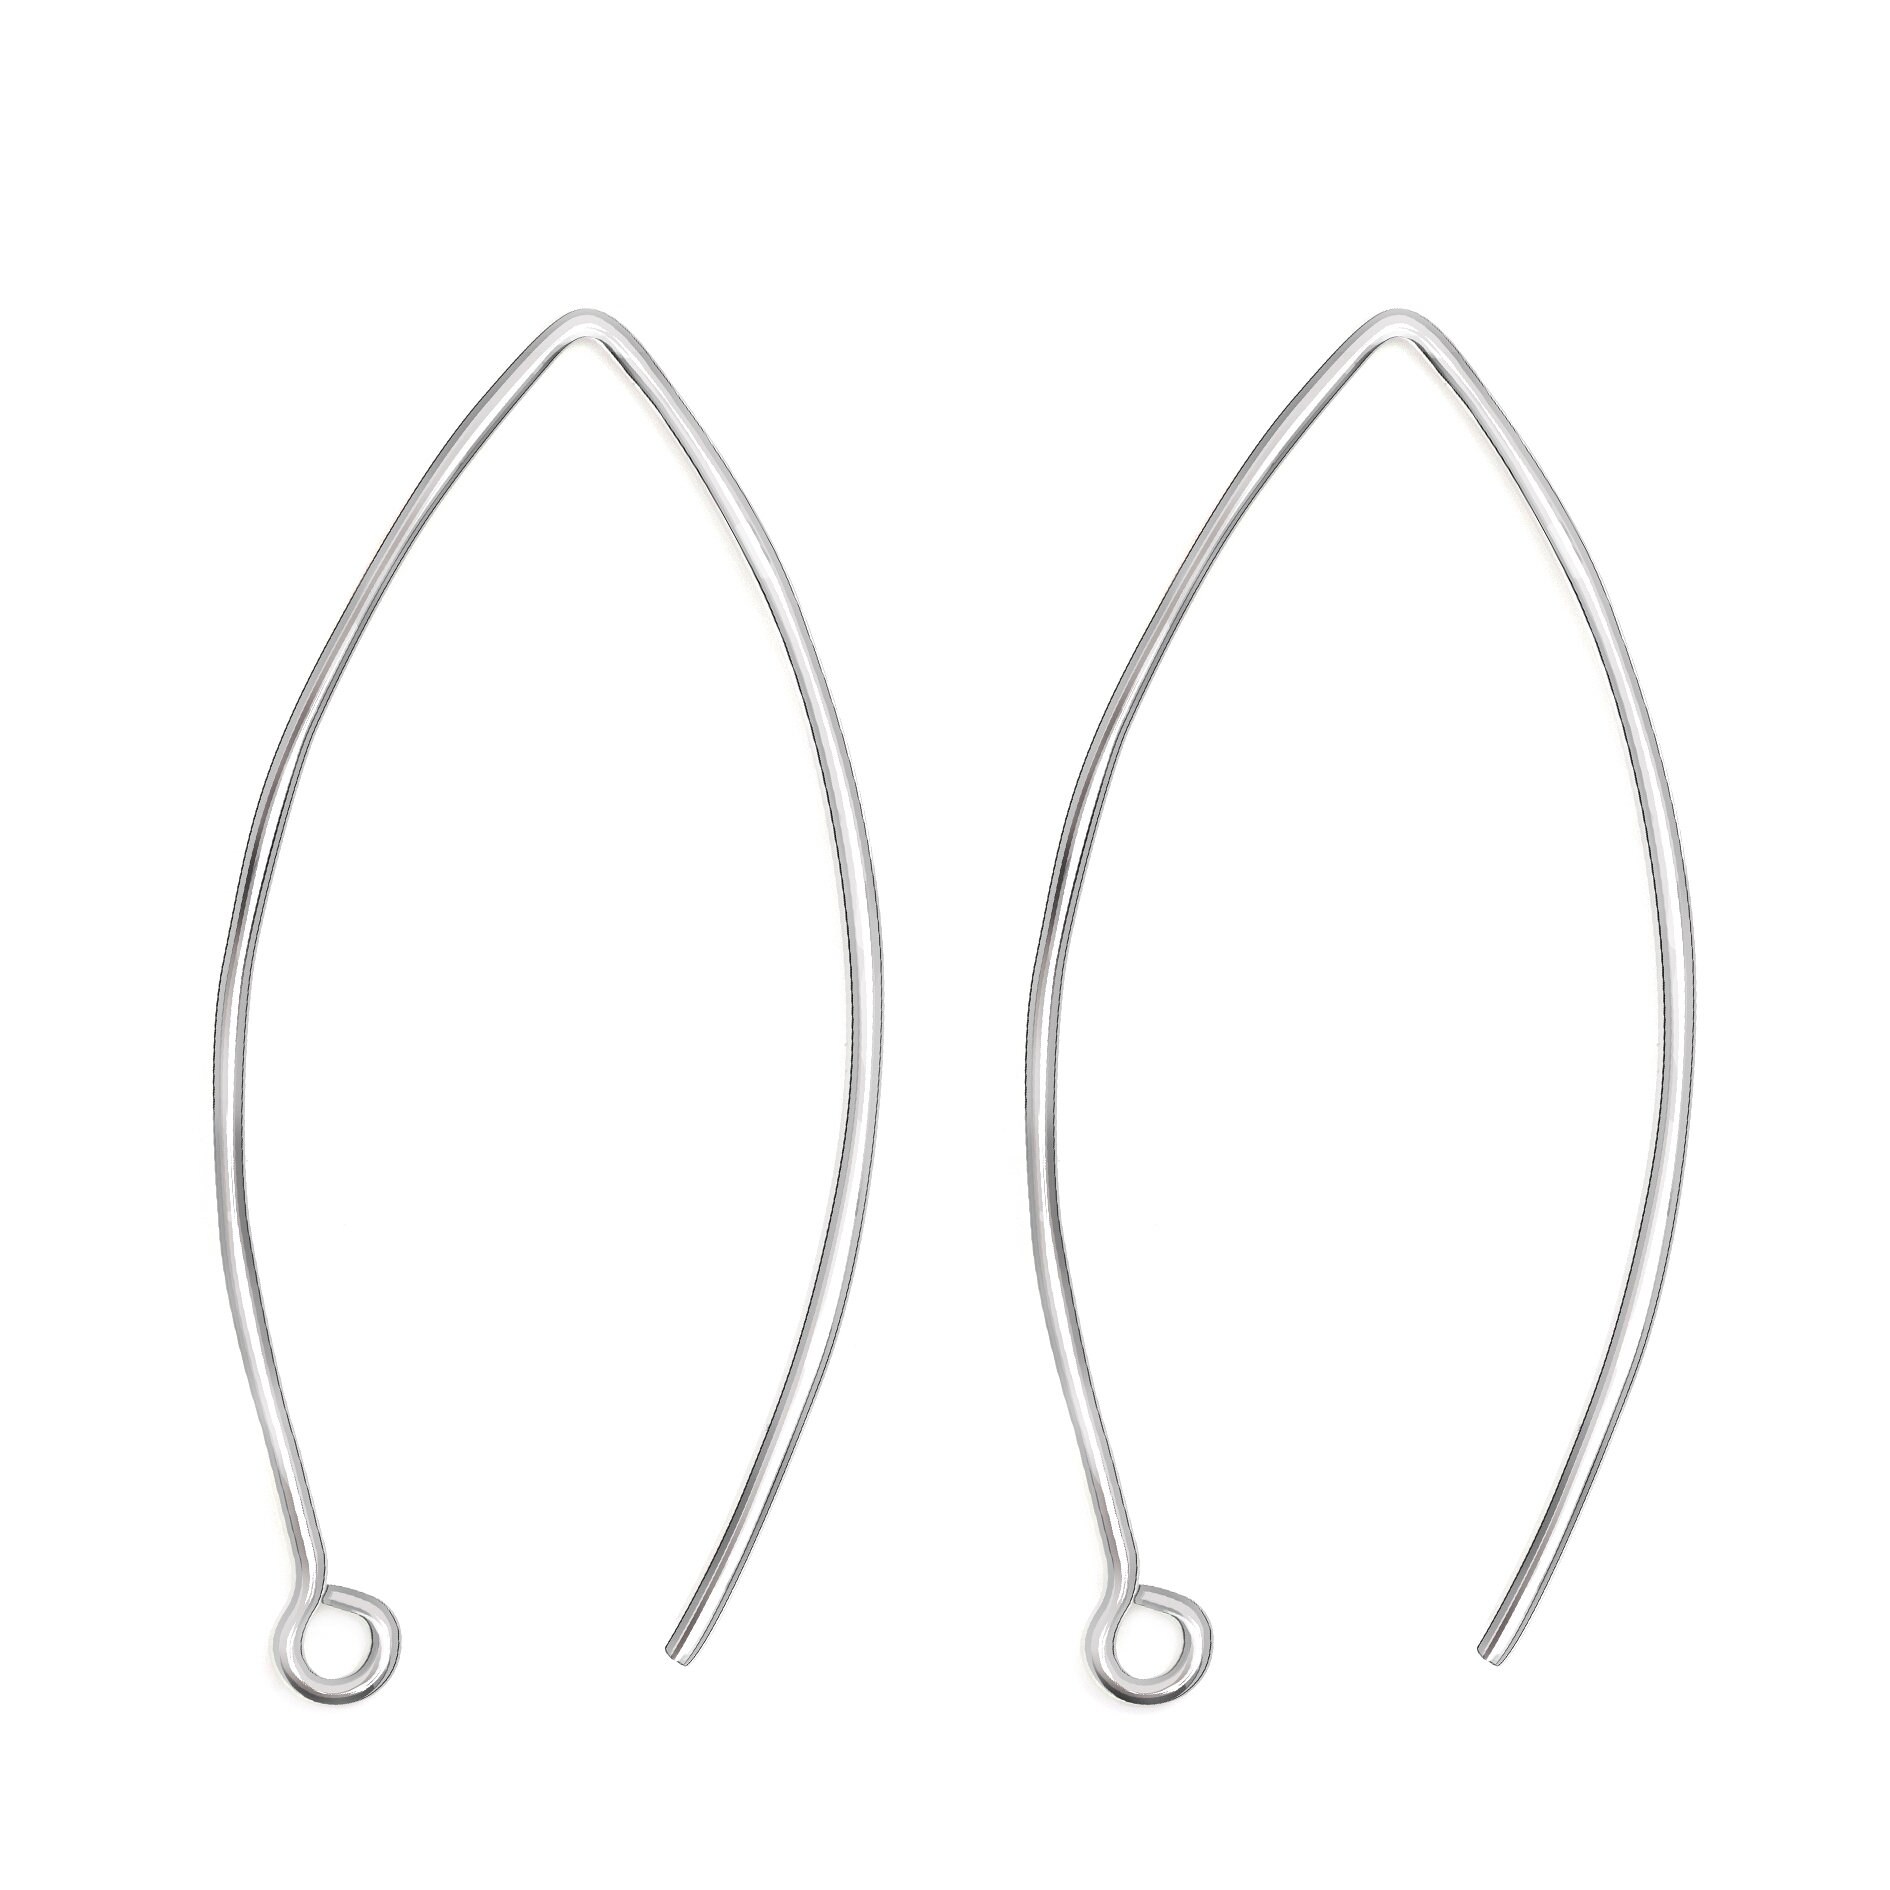 Elegant Long Hook Earring Findings Nickel-free 925 Sterling Silver